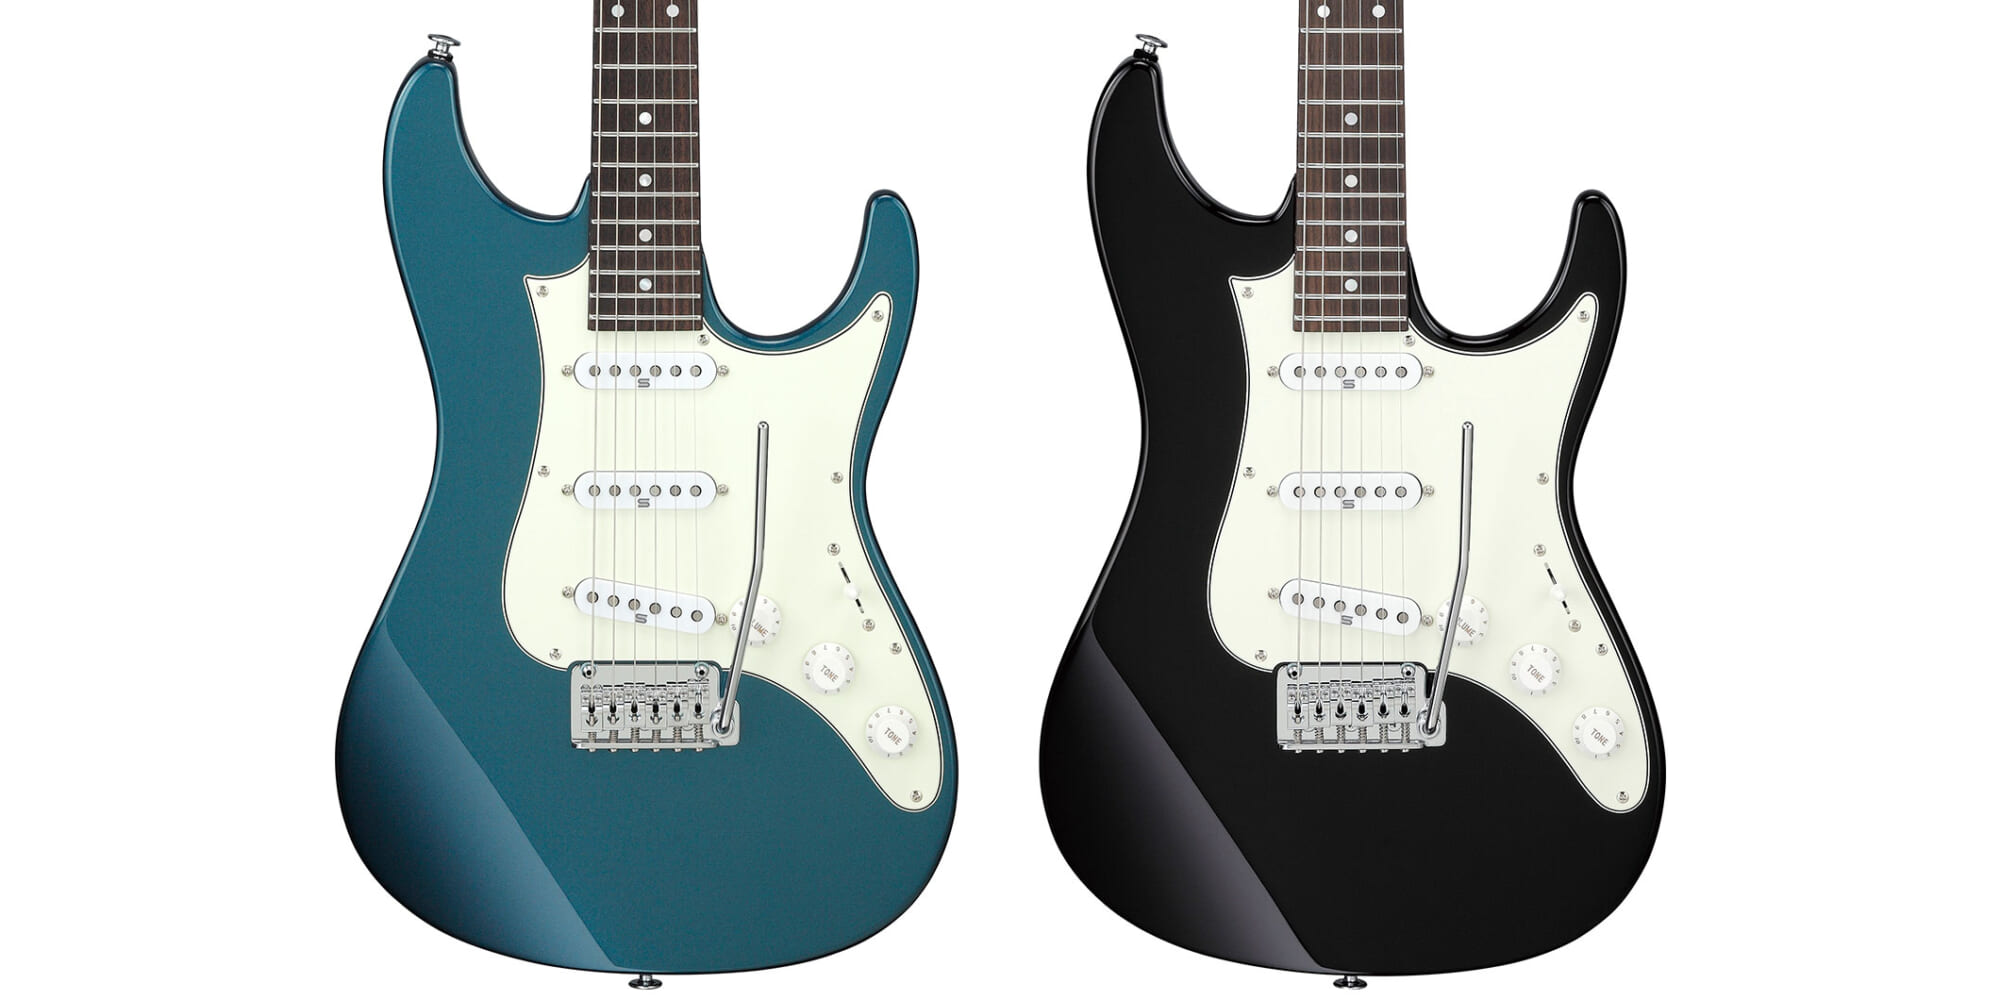 アイバニーズ、“ブレンダー機能”を持つSSS配列のエレクトリック・ギター“AZ2203N”を発売